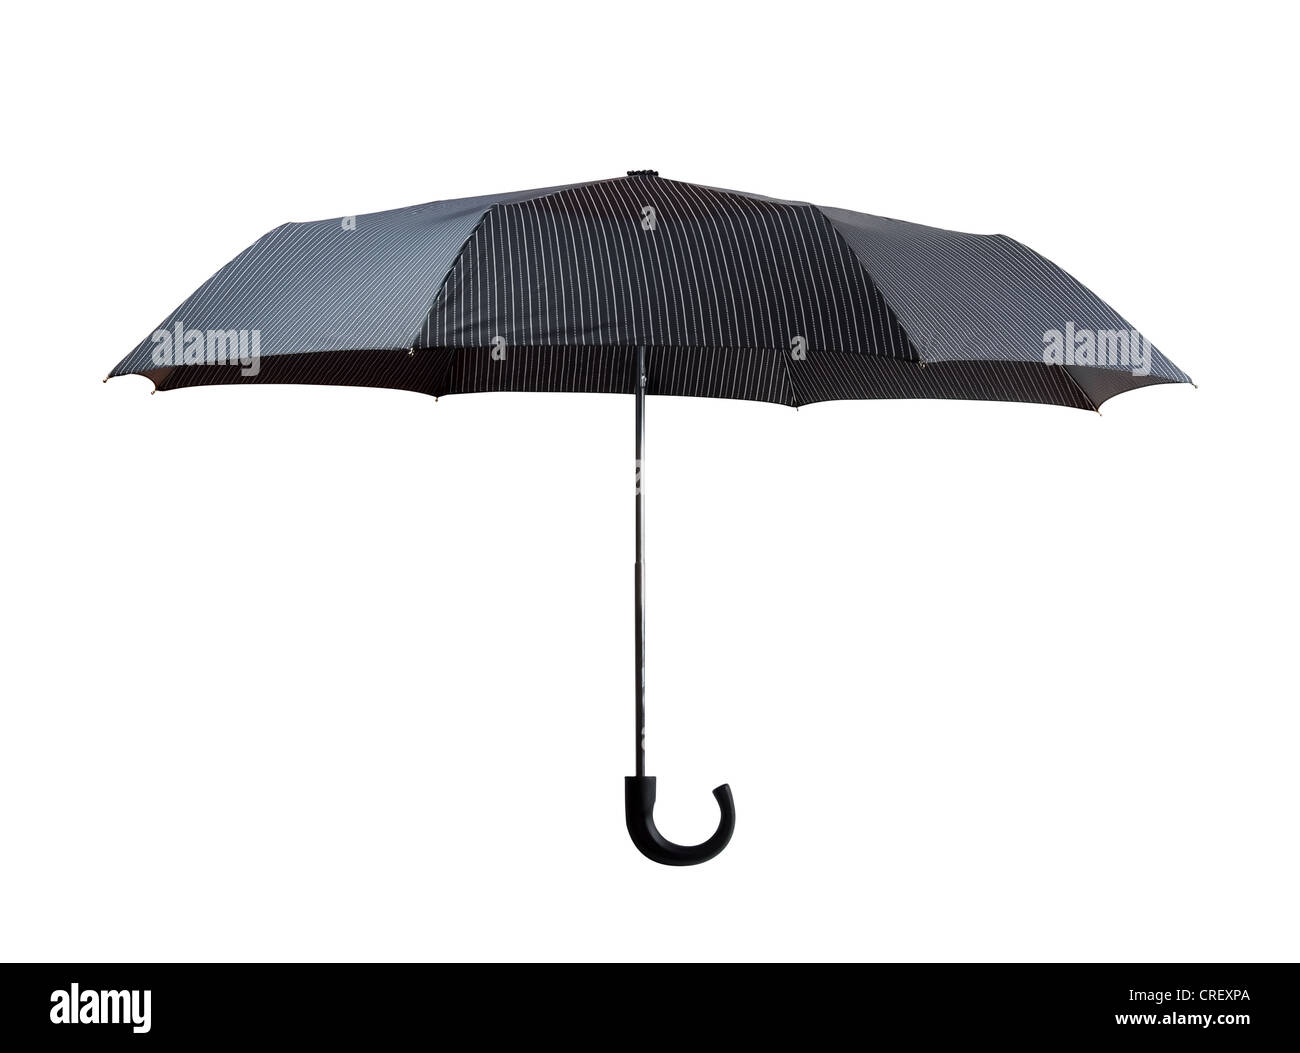 Parapluie à rayures gris foncé ouvert isolated on white Banque D'Images